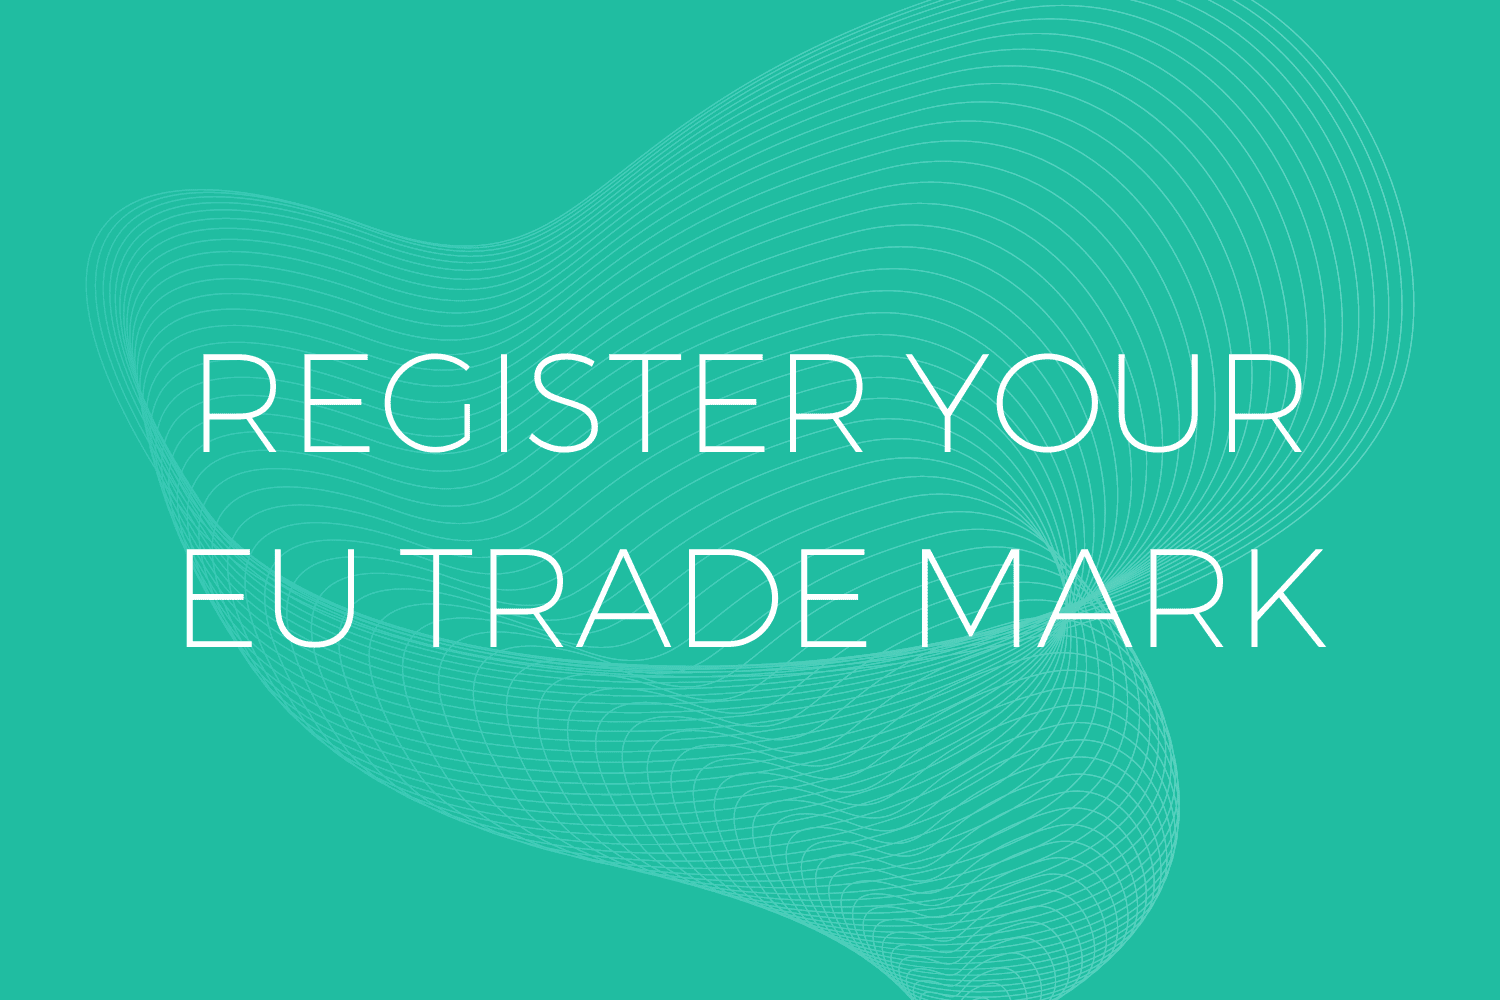 EU Trade Mark Registration